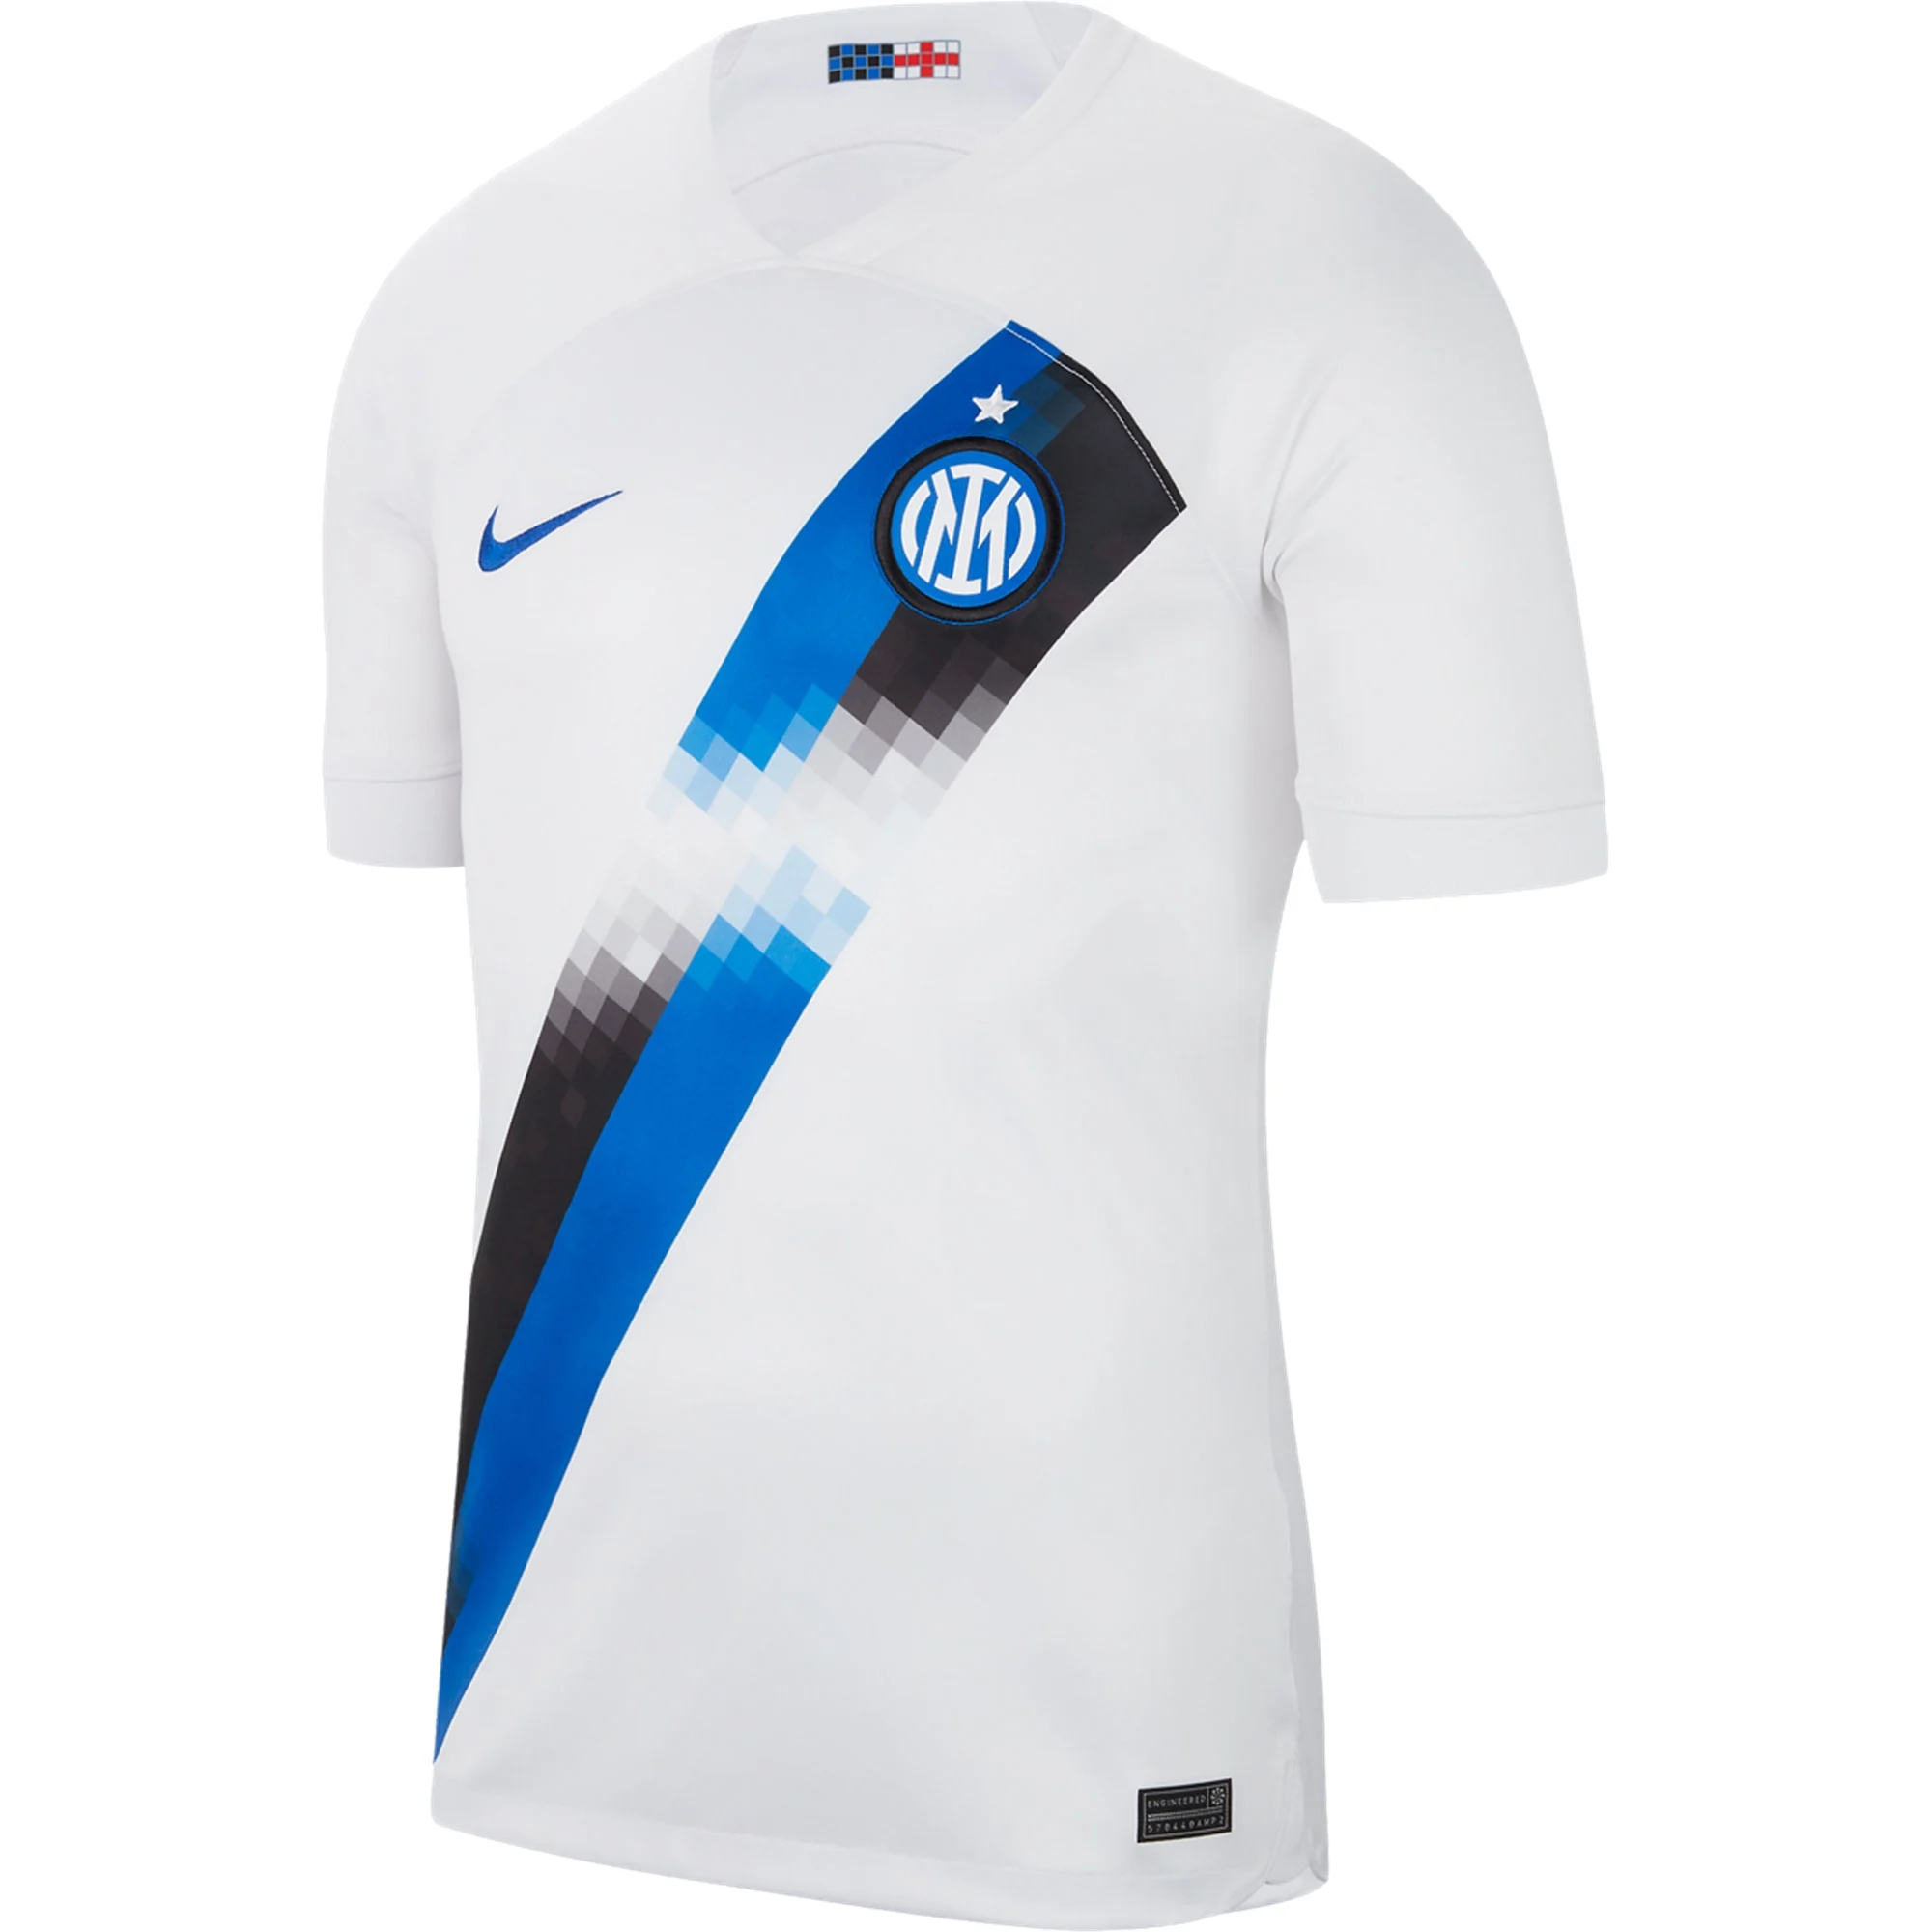 Inter Milan 23/24 Home Shirt